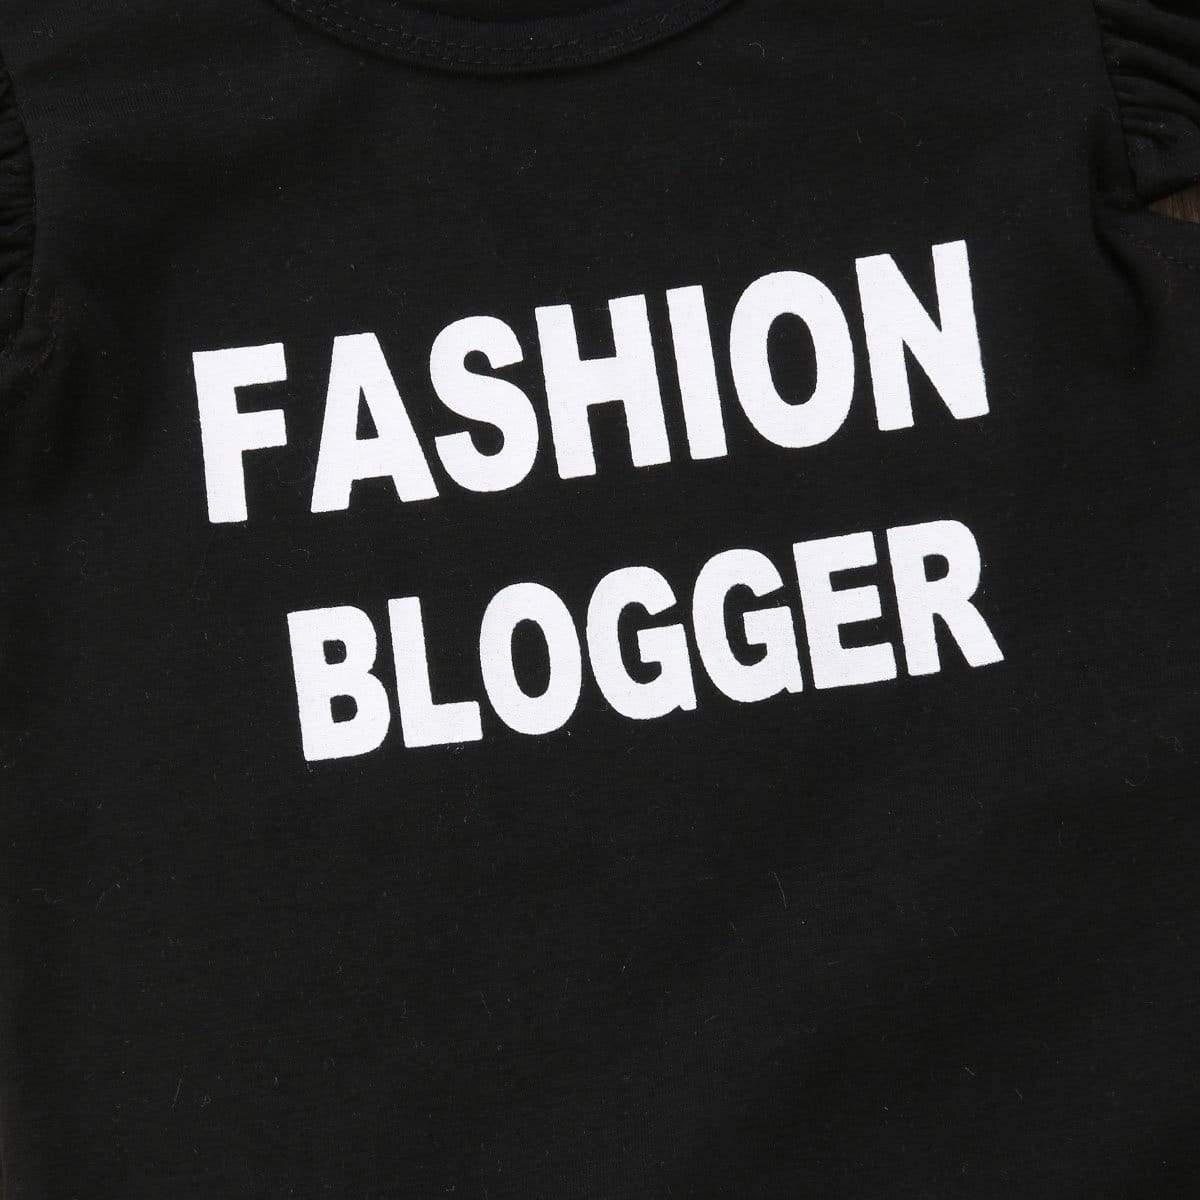 Conjunto Infantil - Fashion Blogger você encontra na Sua Boutique por apenas  ! Com Frete Grátis para todo Brasil, podendo parcelar em até 10X Sem Juros! Alé,m disso ganhe 10% OFF no PIX! 